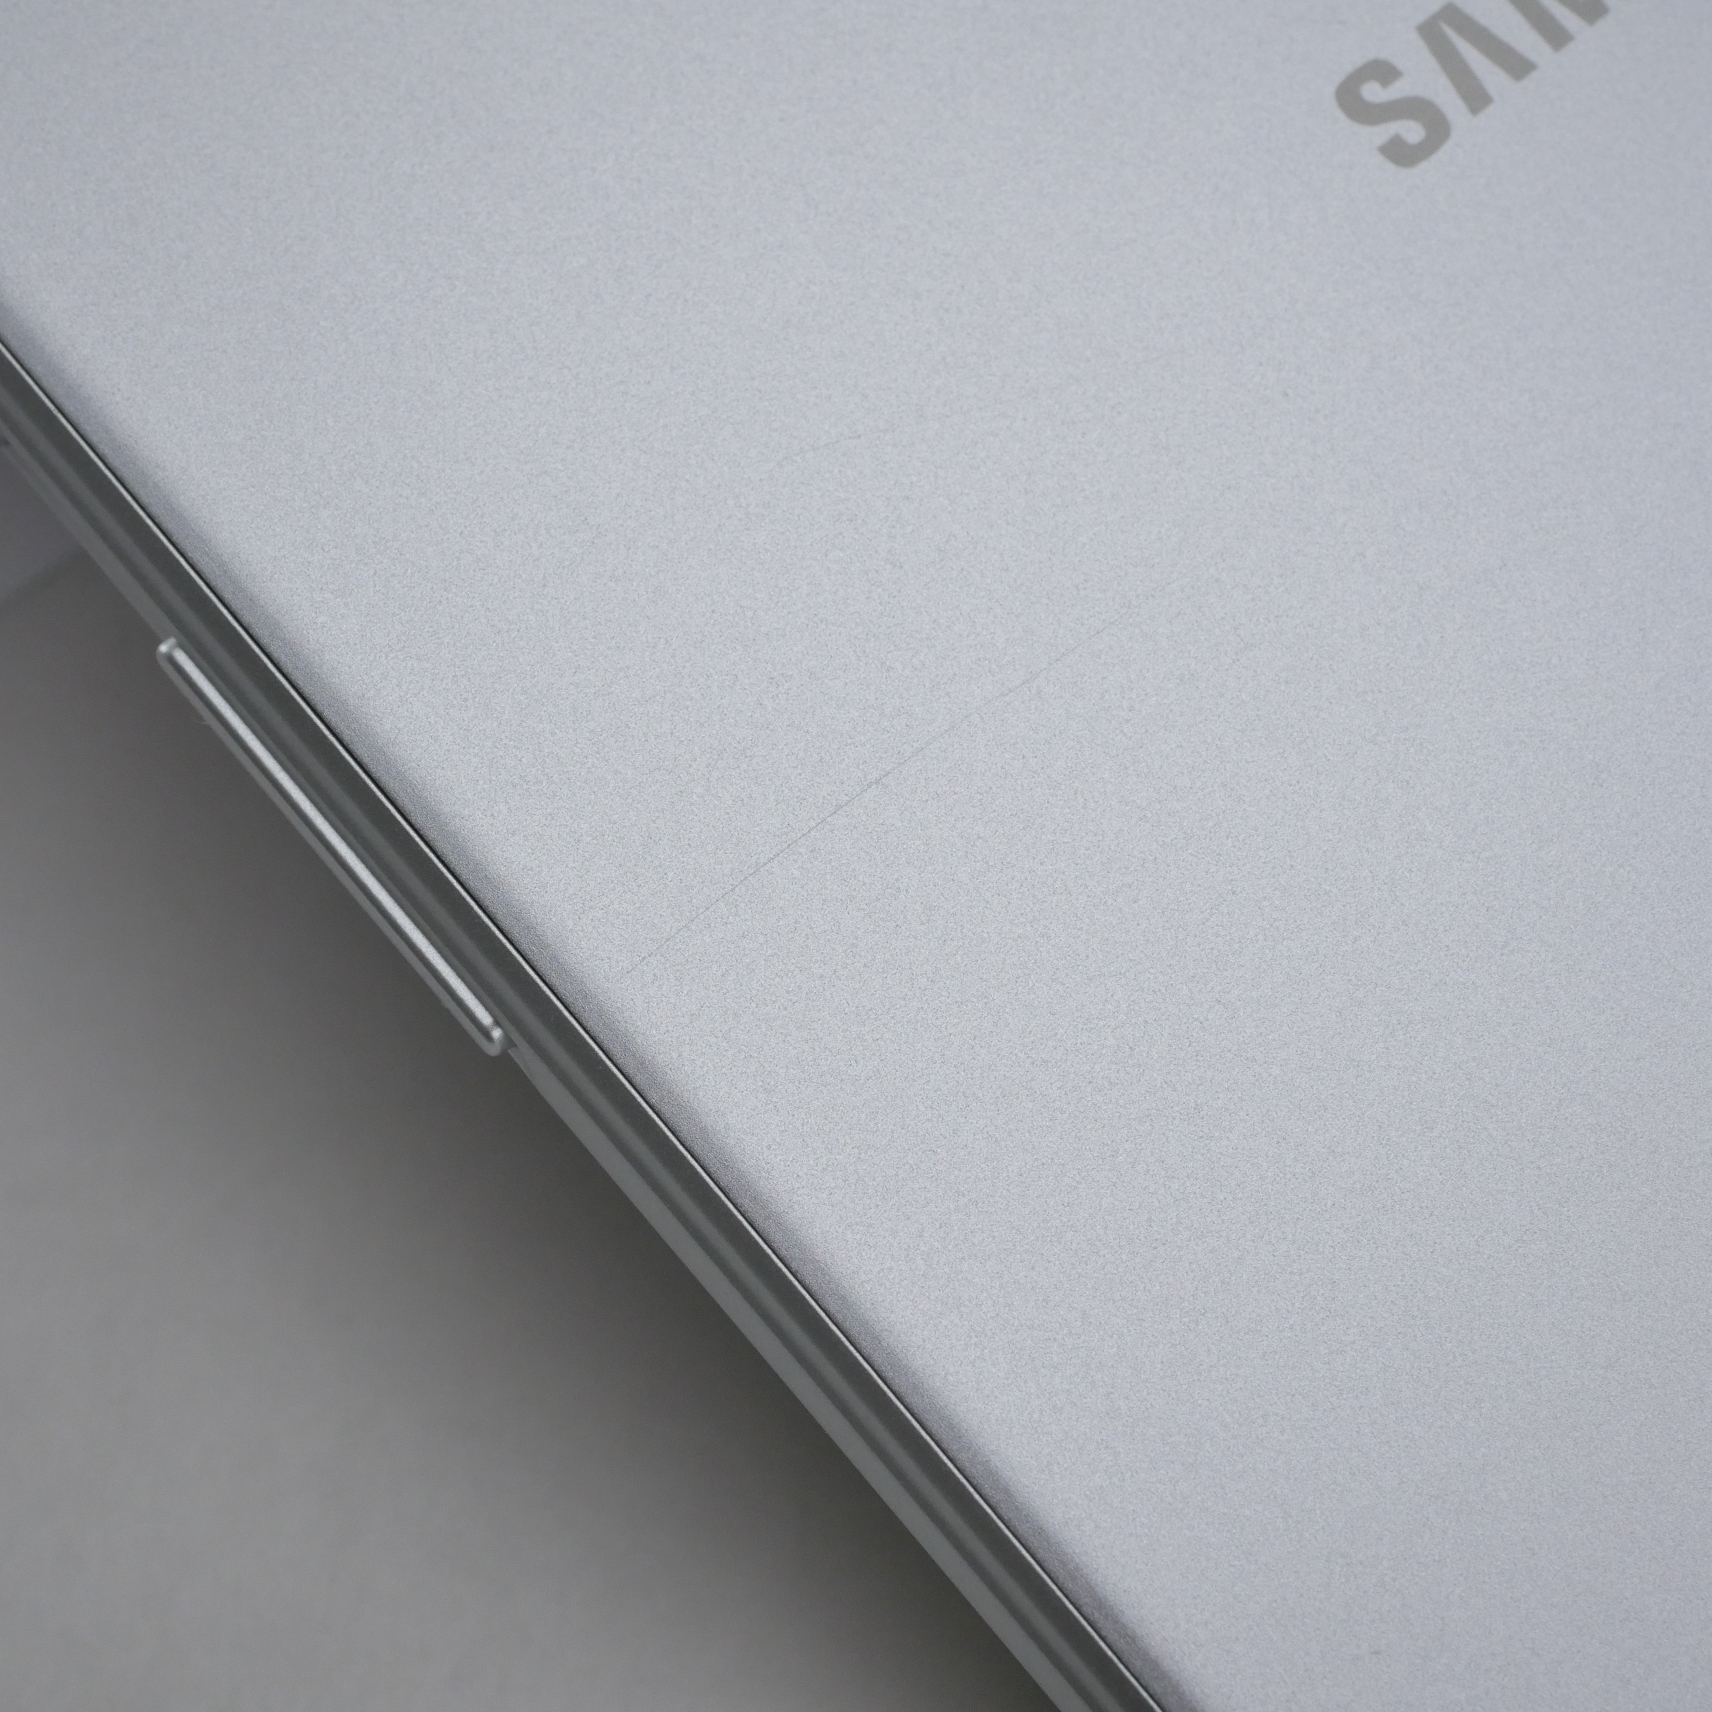 Samsung - Galaxy Tab A (2019) - 8 - WiFi - 32GB - Silver - SM-T290NZSAXAR